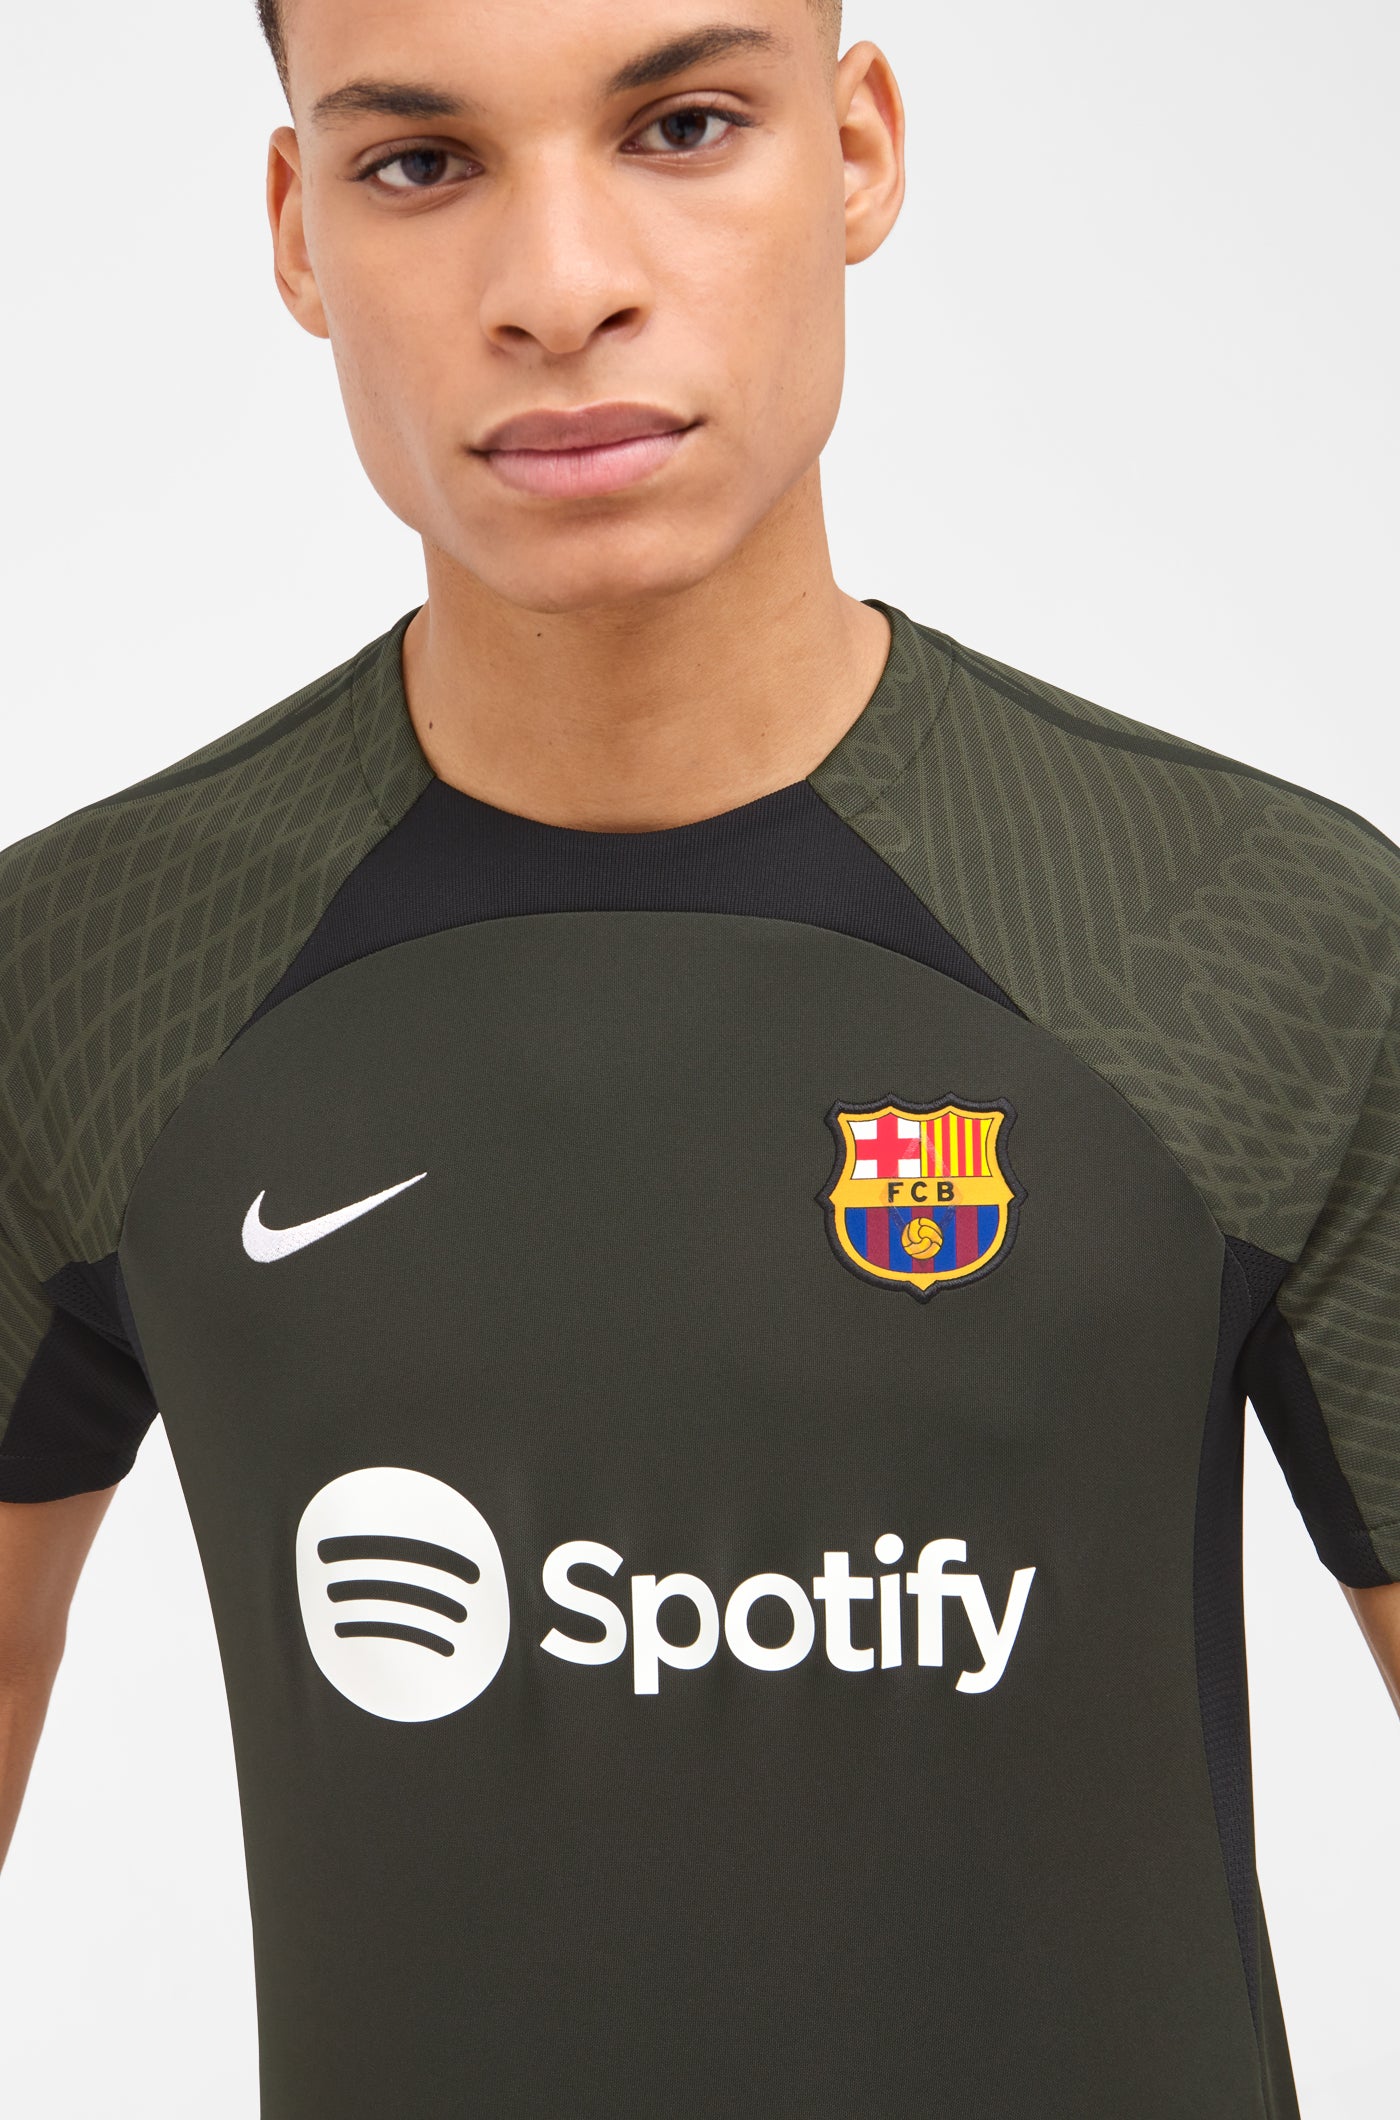 Des tenues d'entrainement avec une nouvelle technologie pour le Barça